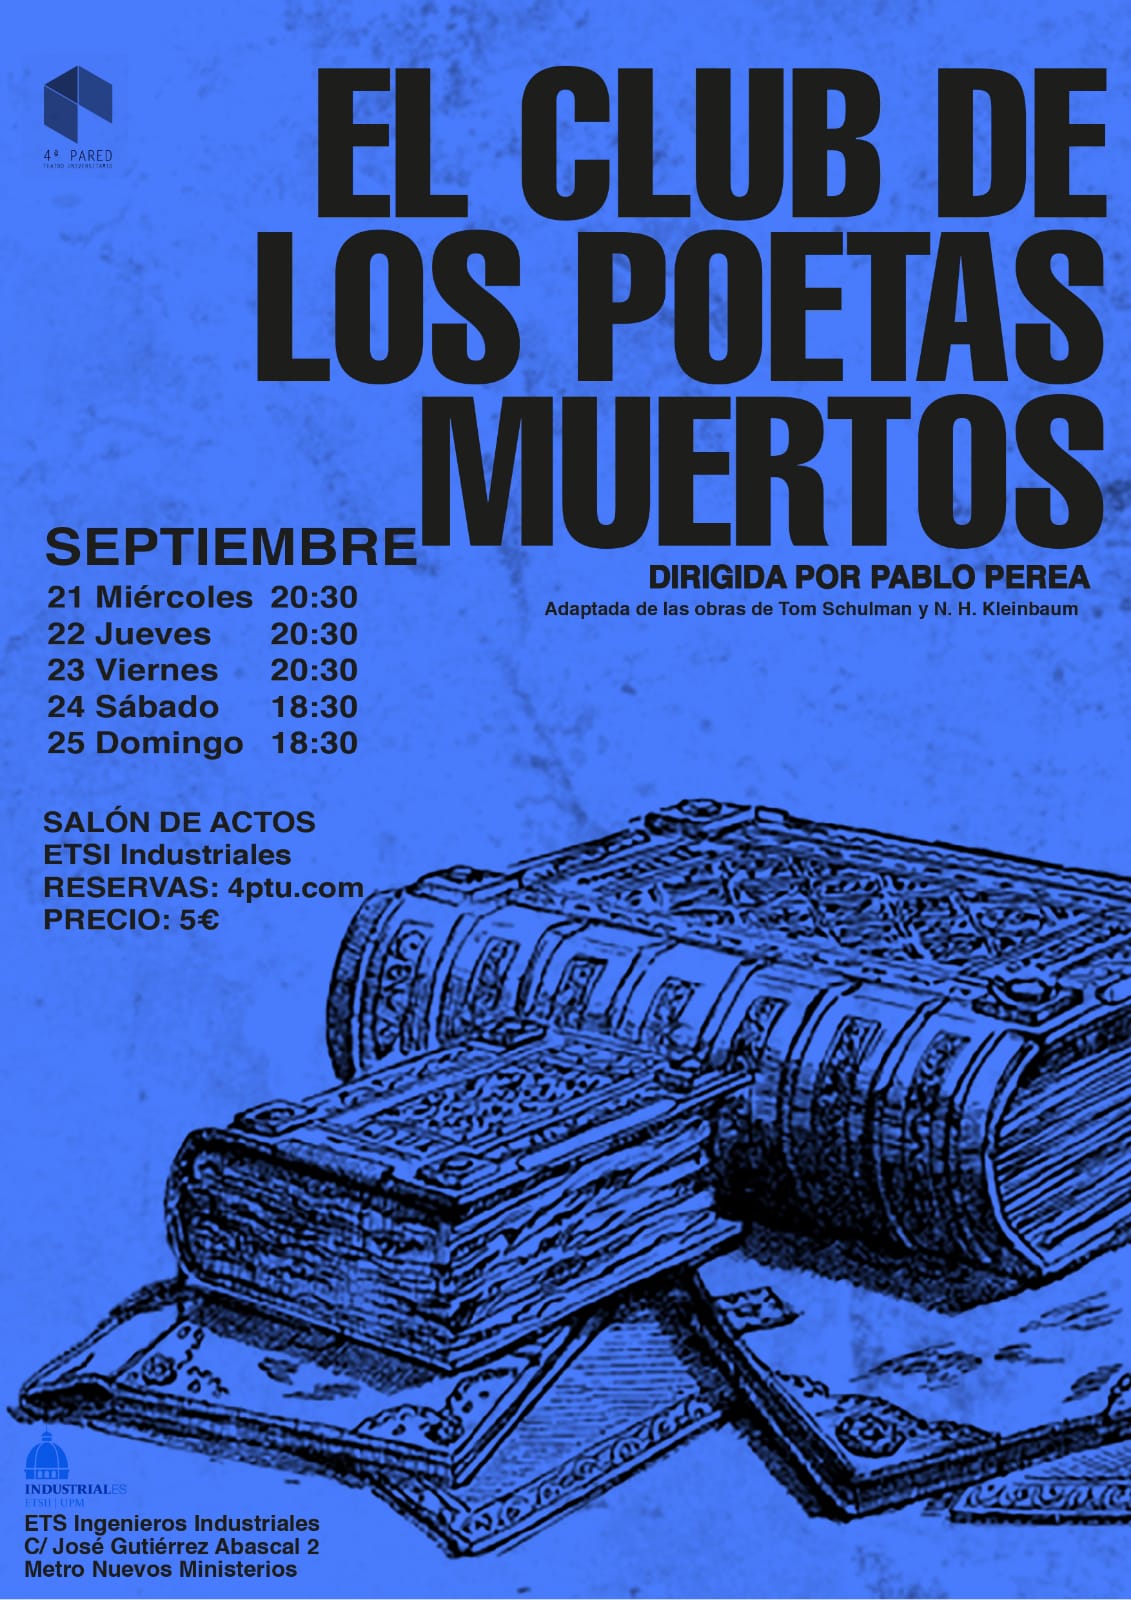 El Club de los Poetas Muertos: resumen, crítica y análisis - Ocio 3.0